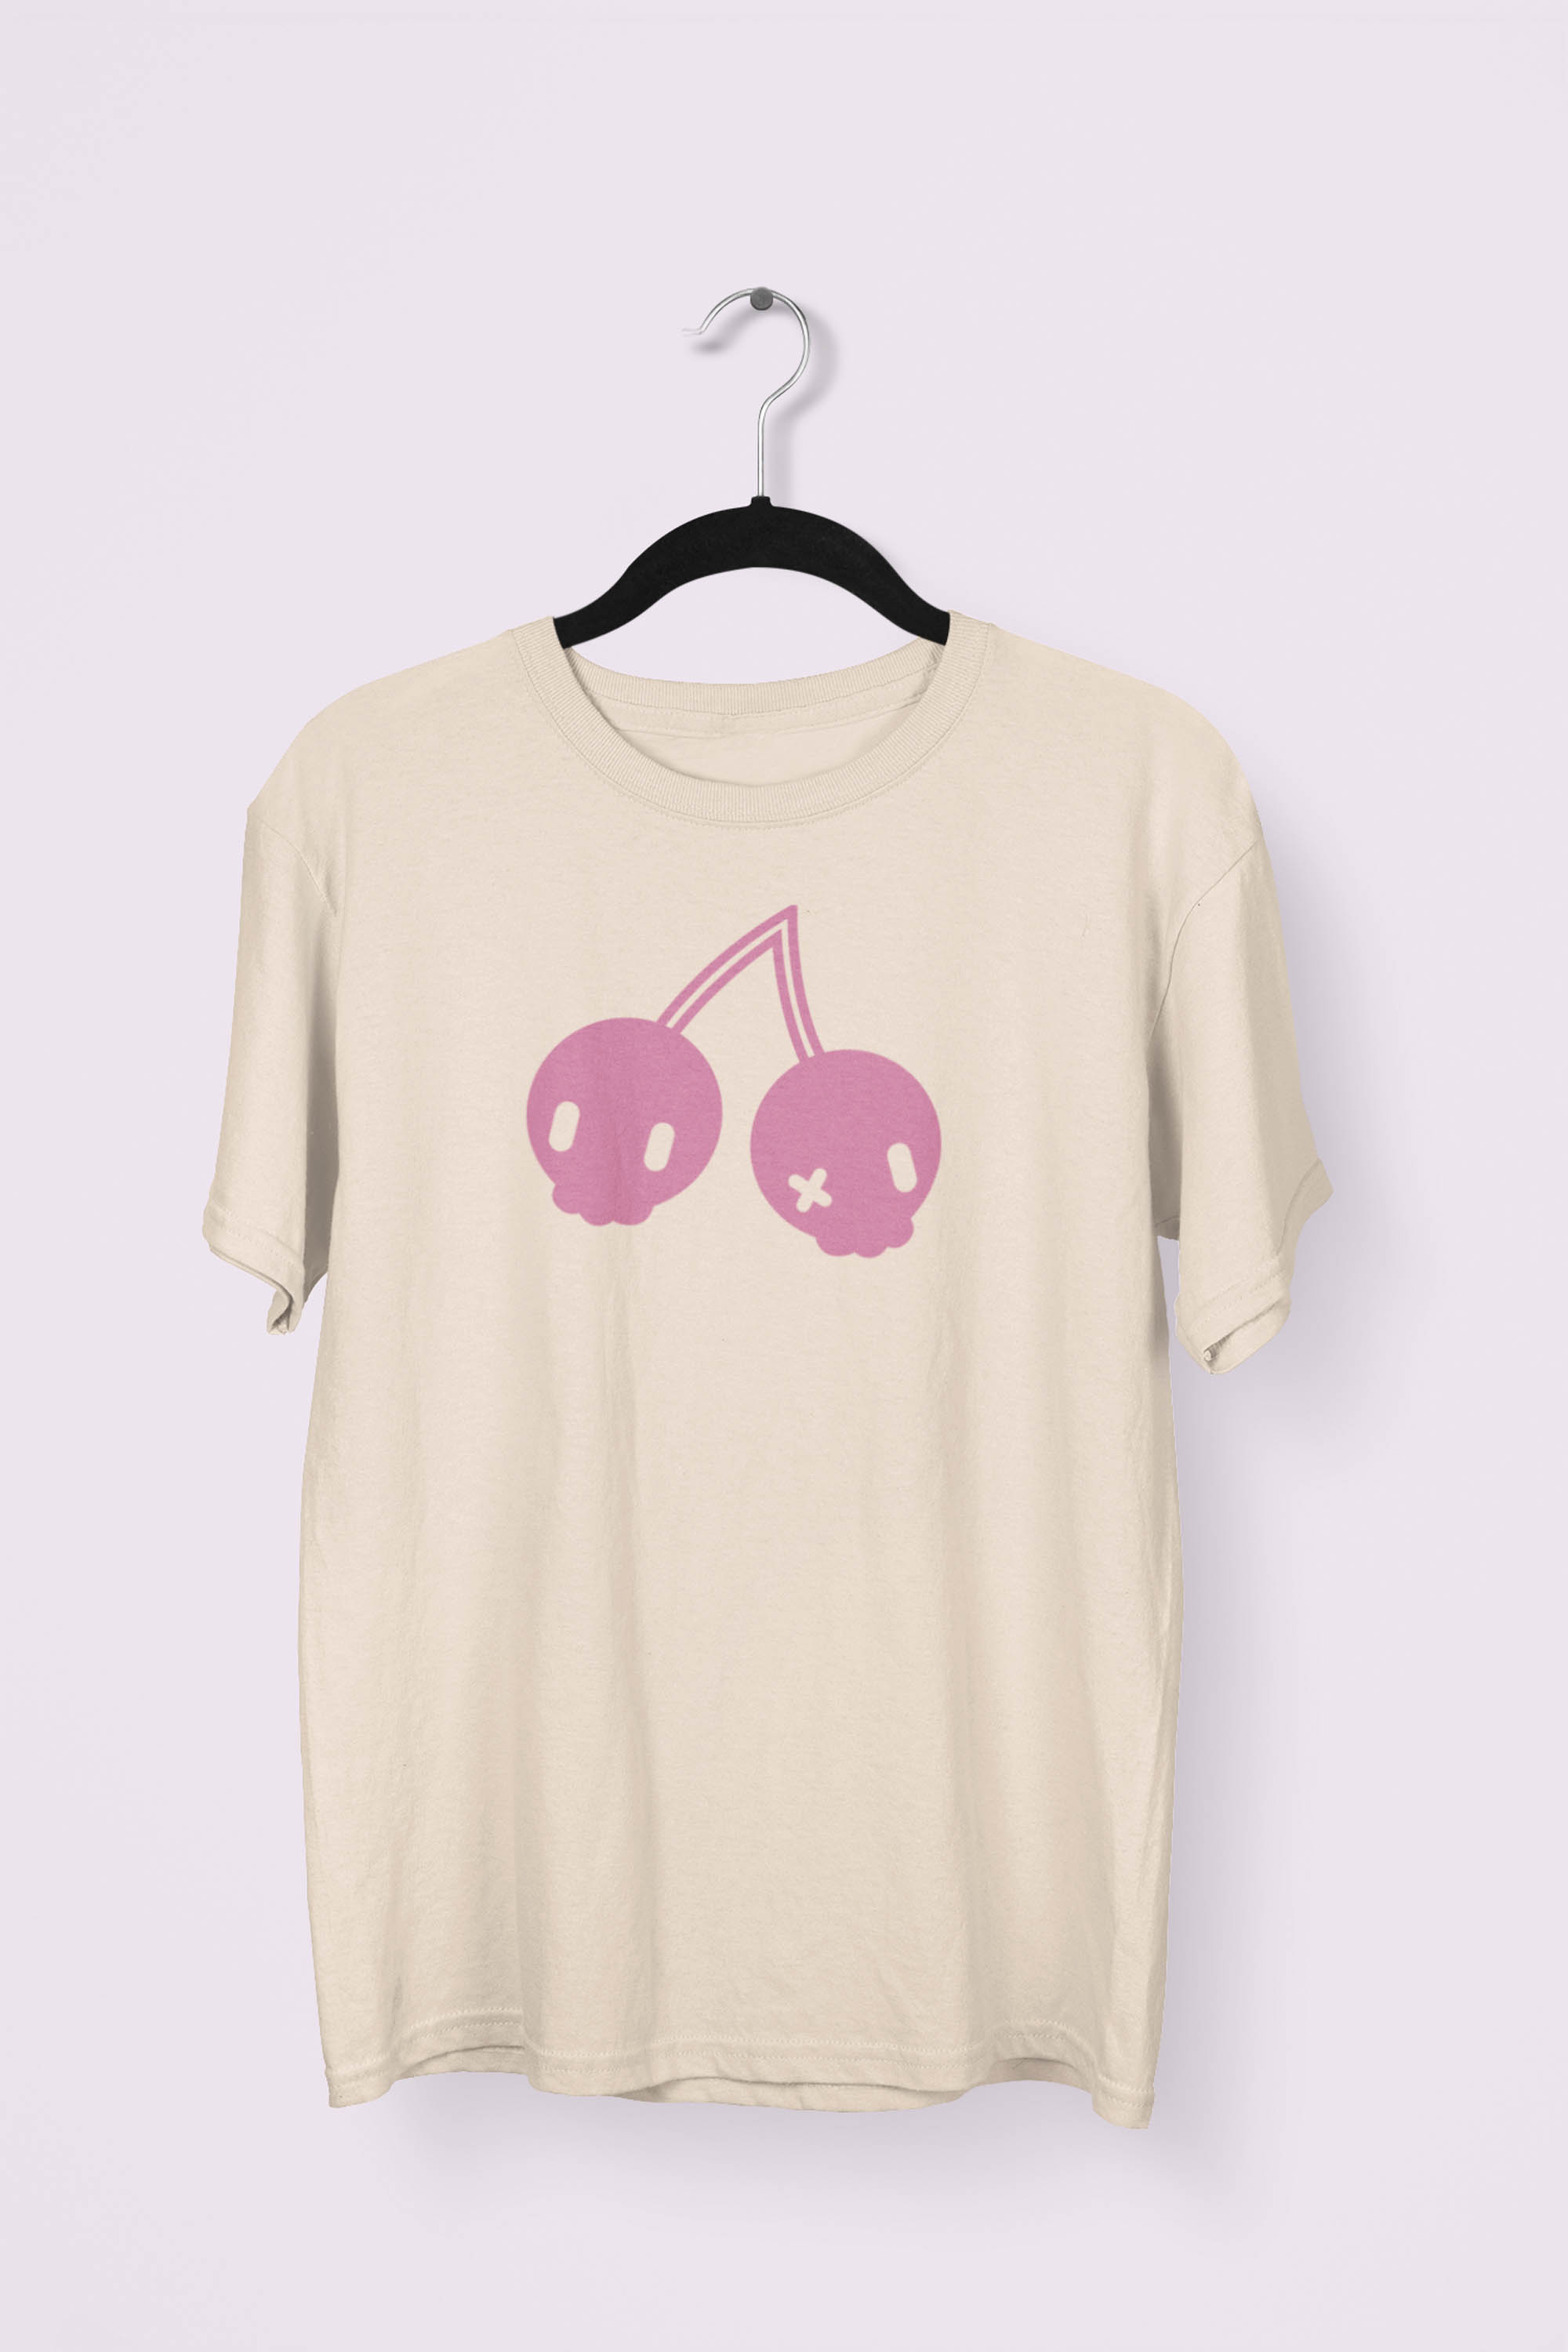 Cherry Skulls T-shirt by Dokkirii - Natural